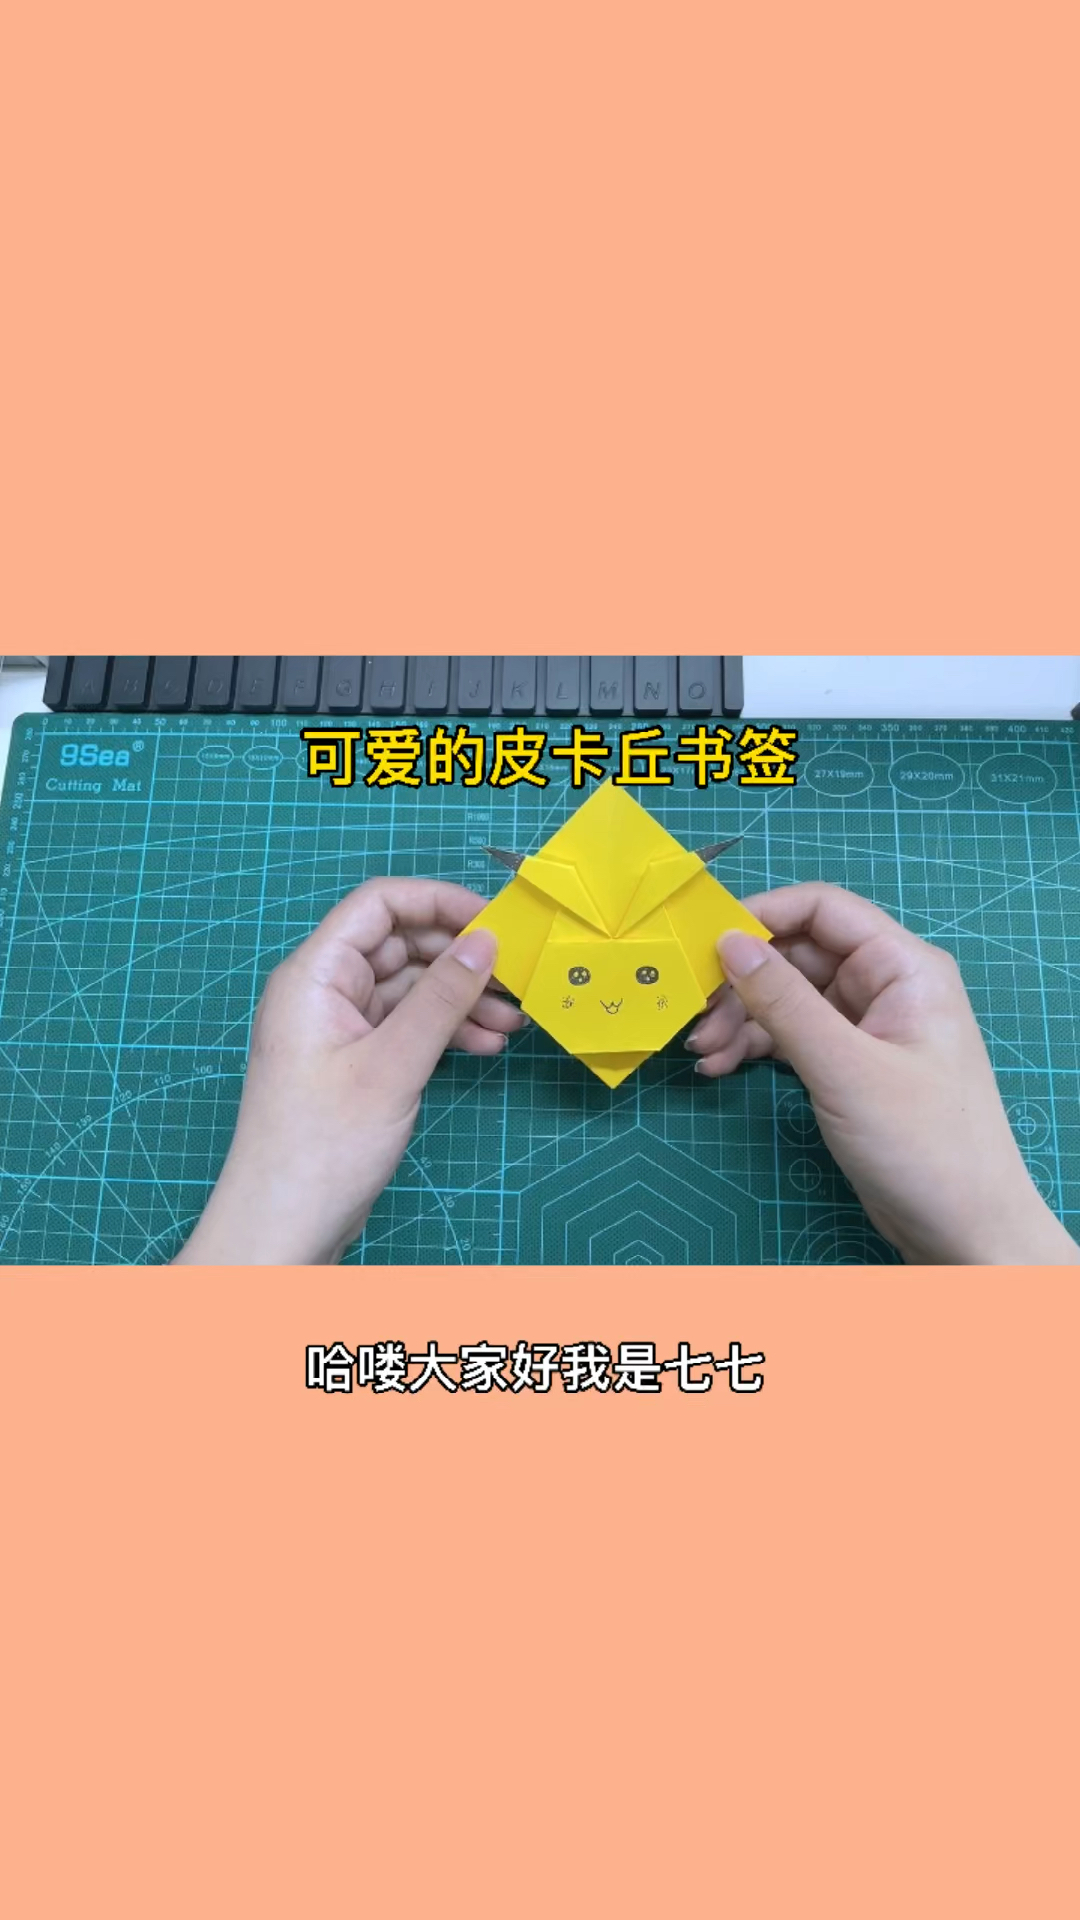 手工制作折纸超级可爱的皮卡丘书签一起做起来